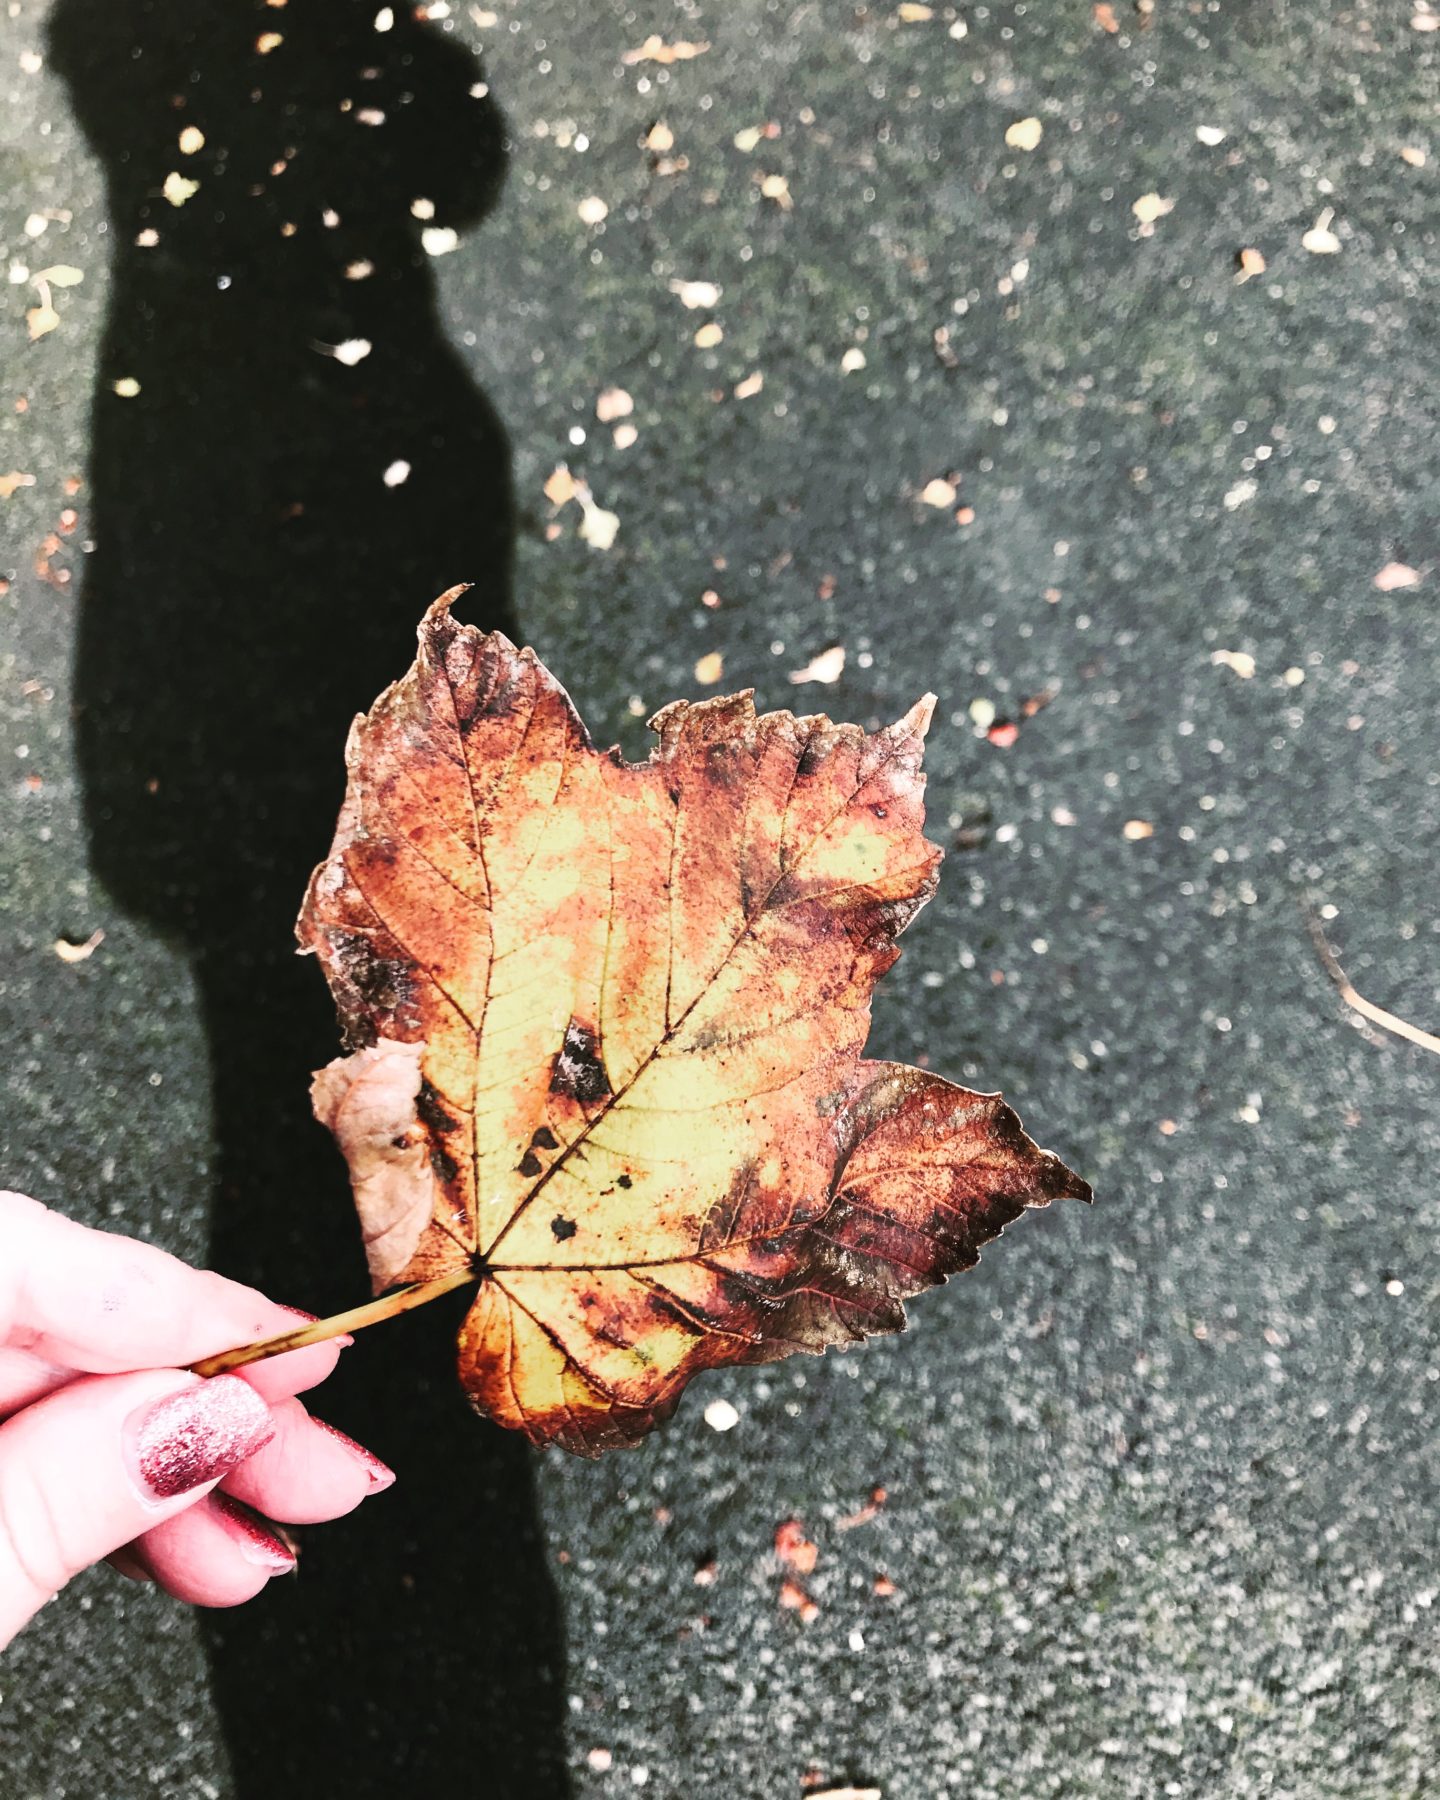 #MySundayPhoto - Autumn at Hand